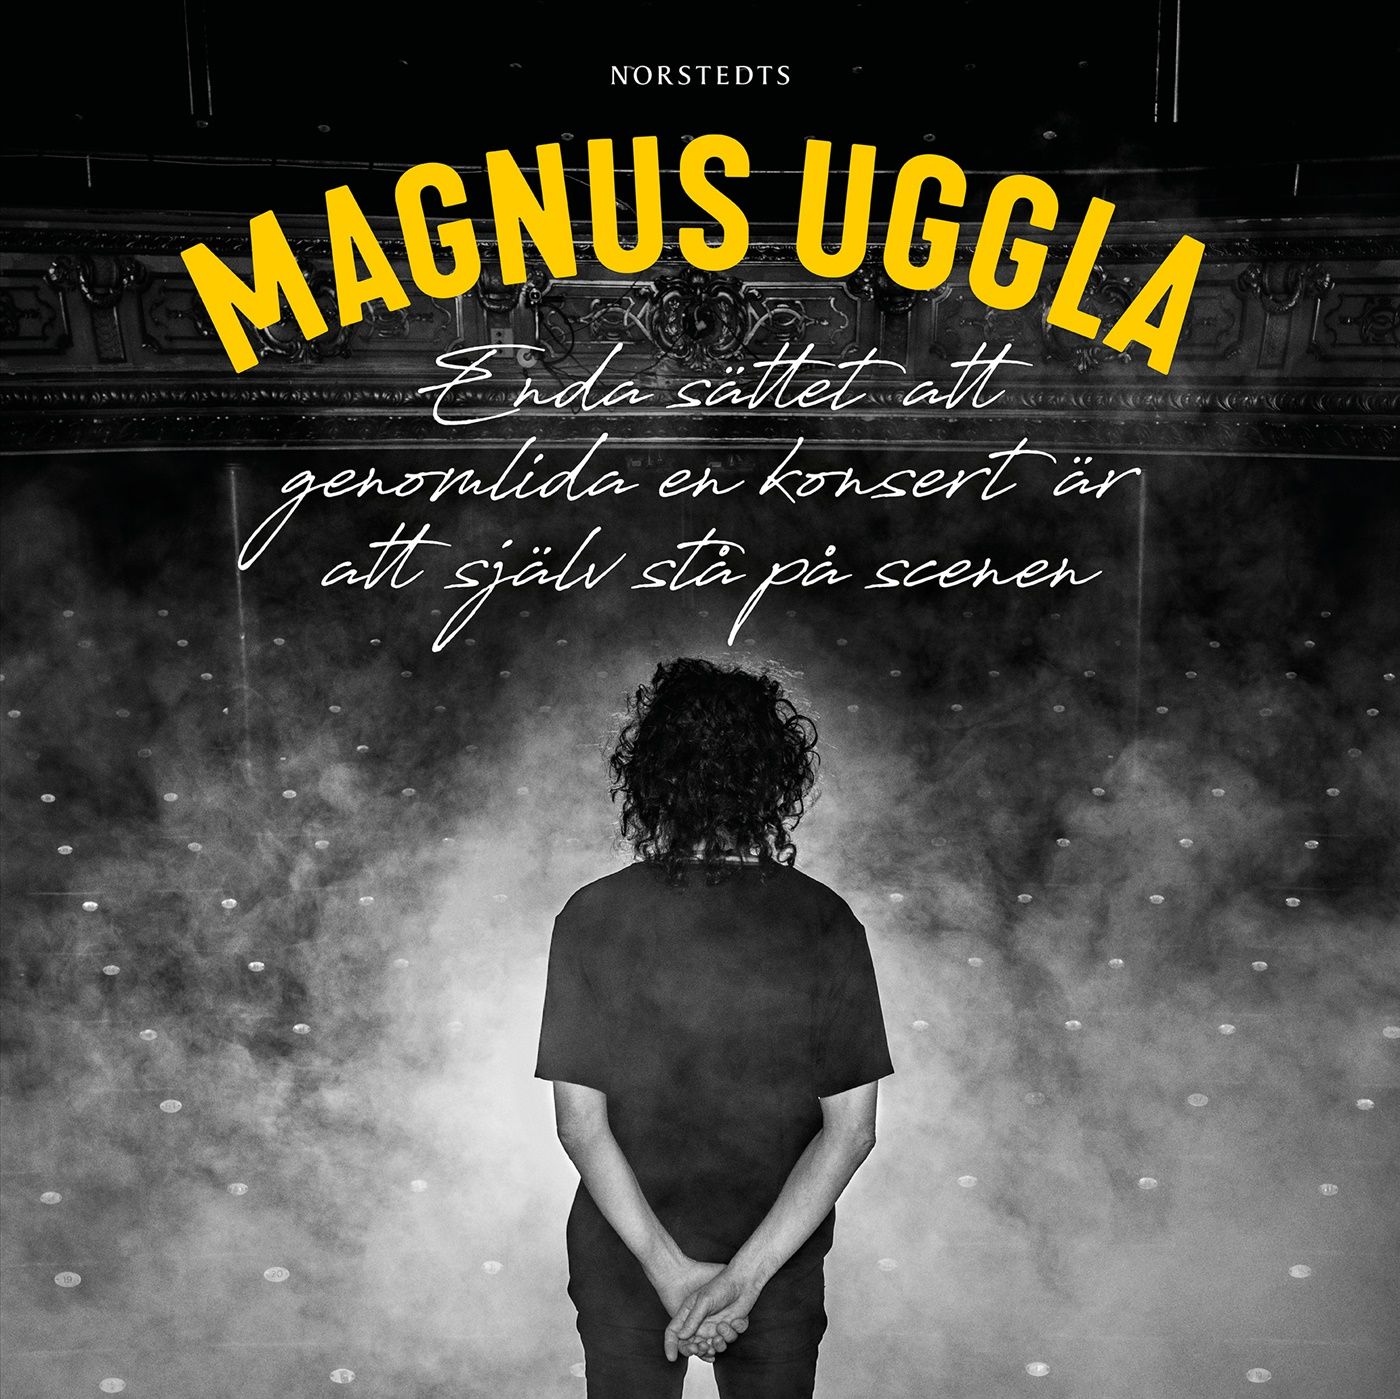 Enda sättet att genomlida en konsert är att själv stå på scenen, audiobook by Magnus Uggla